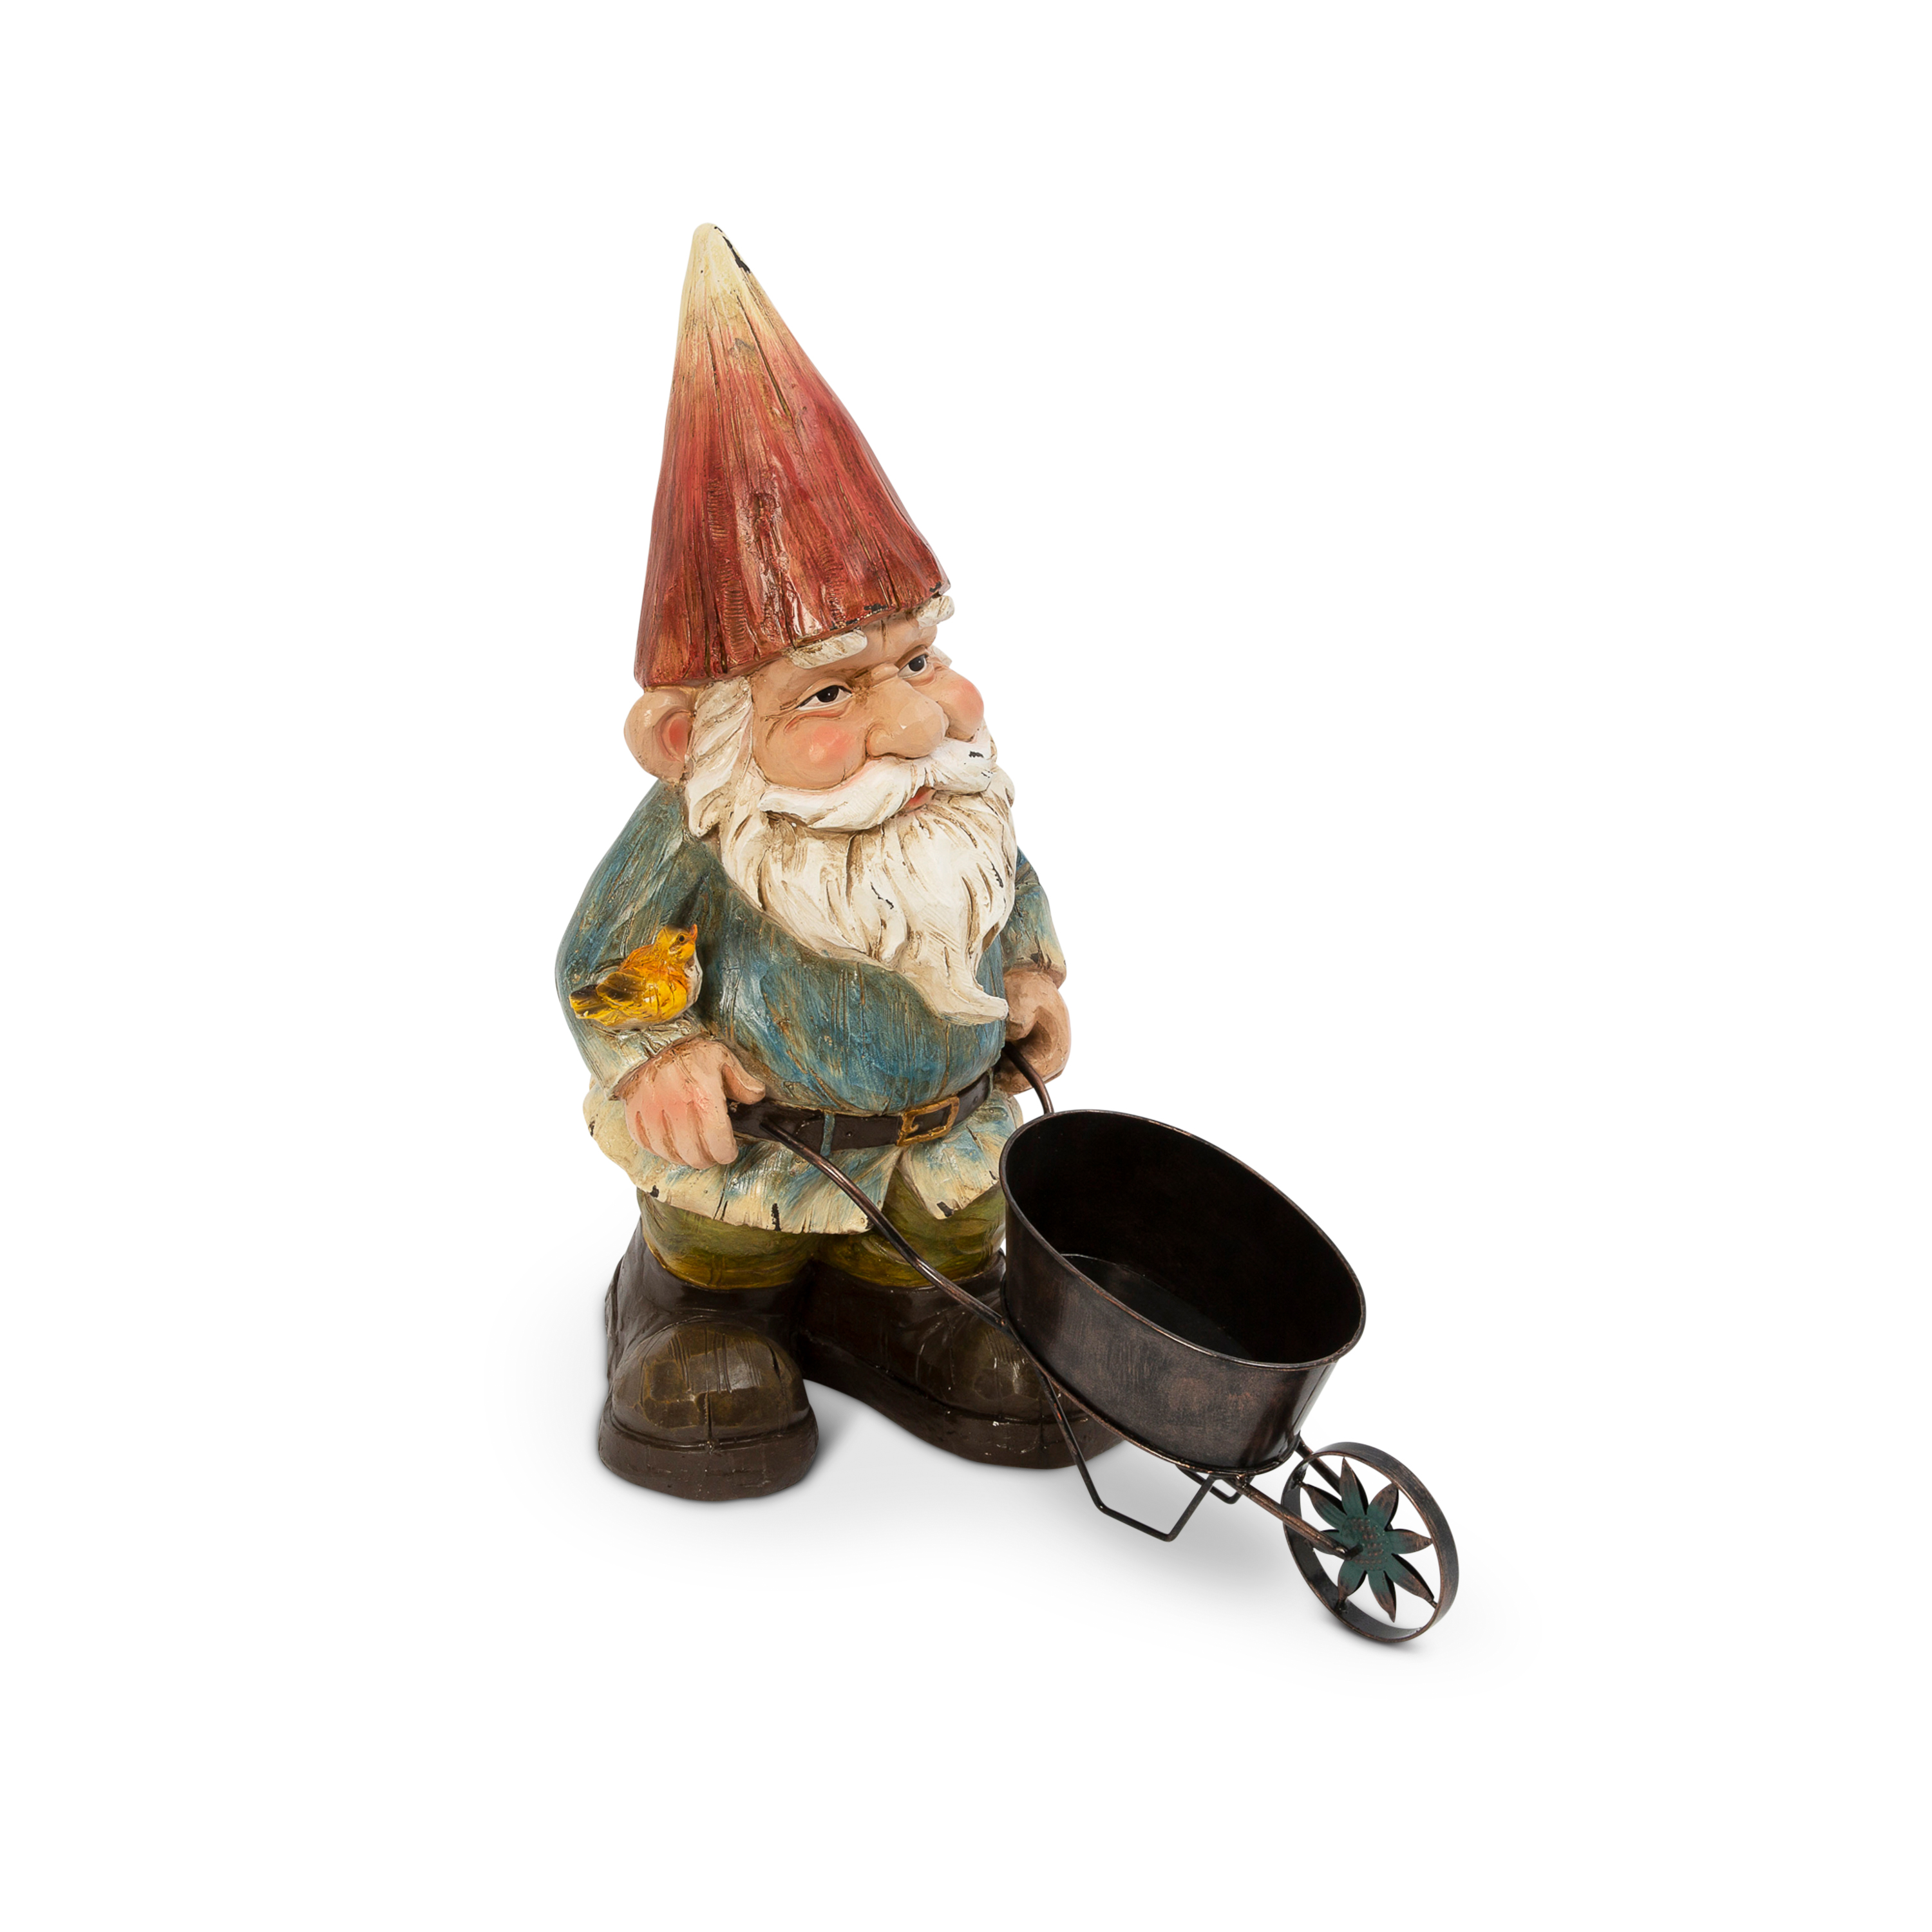 Gerson 22" Resin Garden Gnome with Wheelbarrow - image 1 of 1